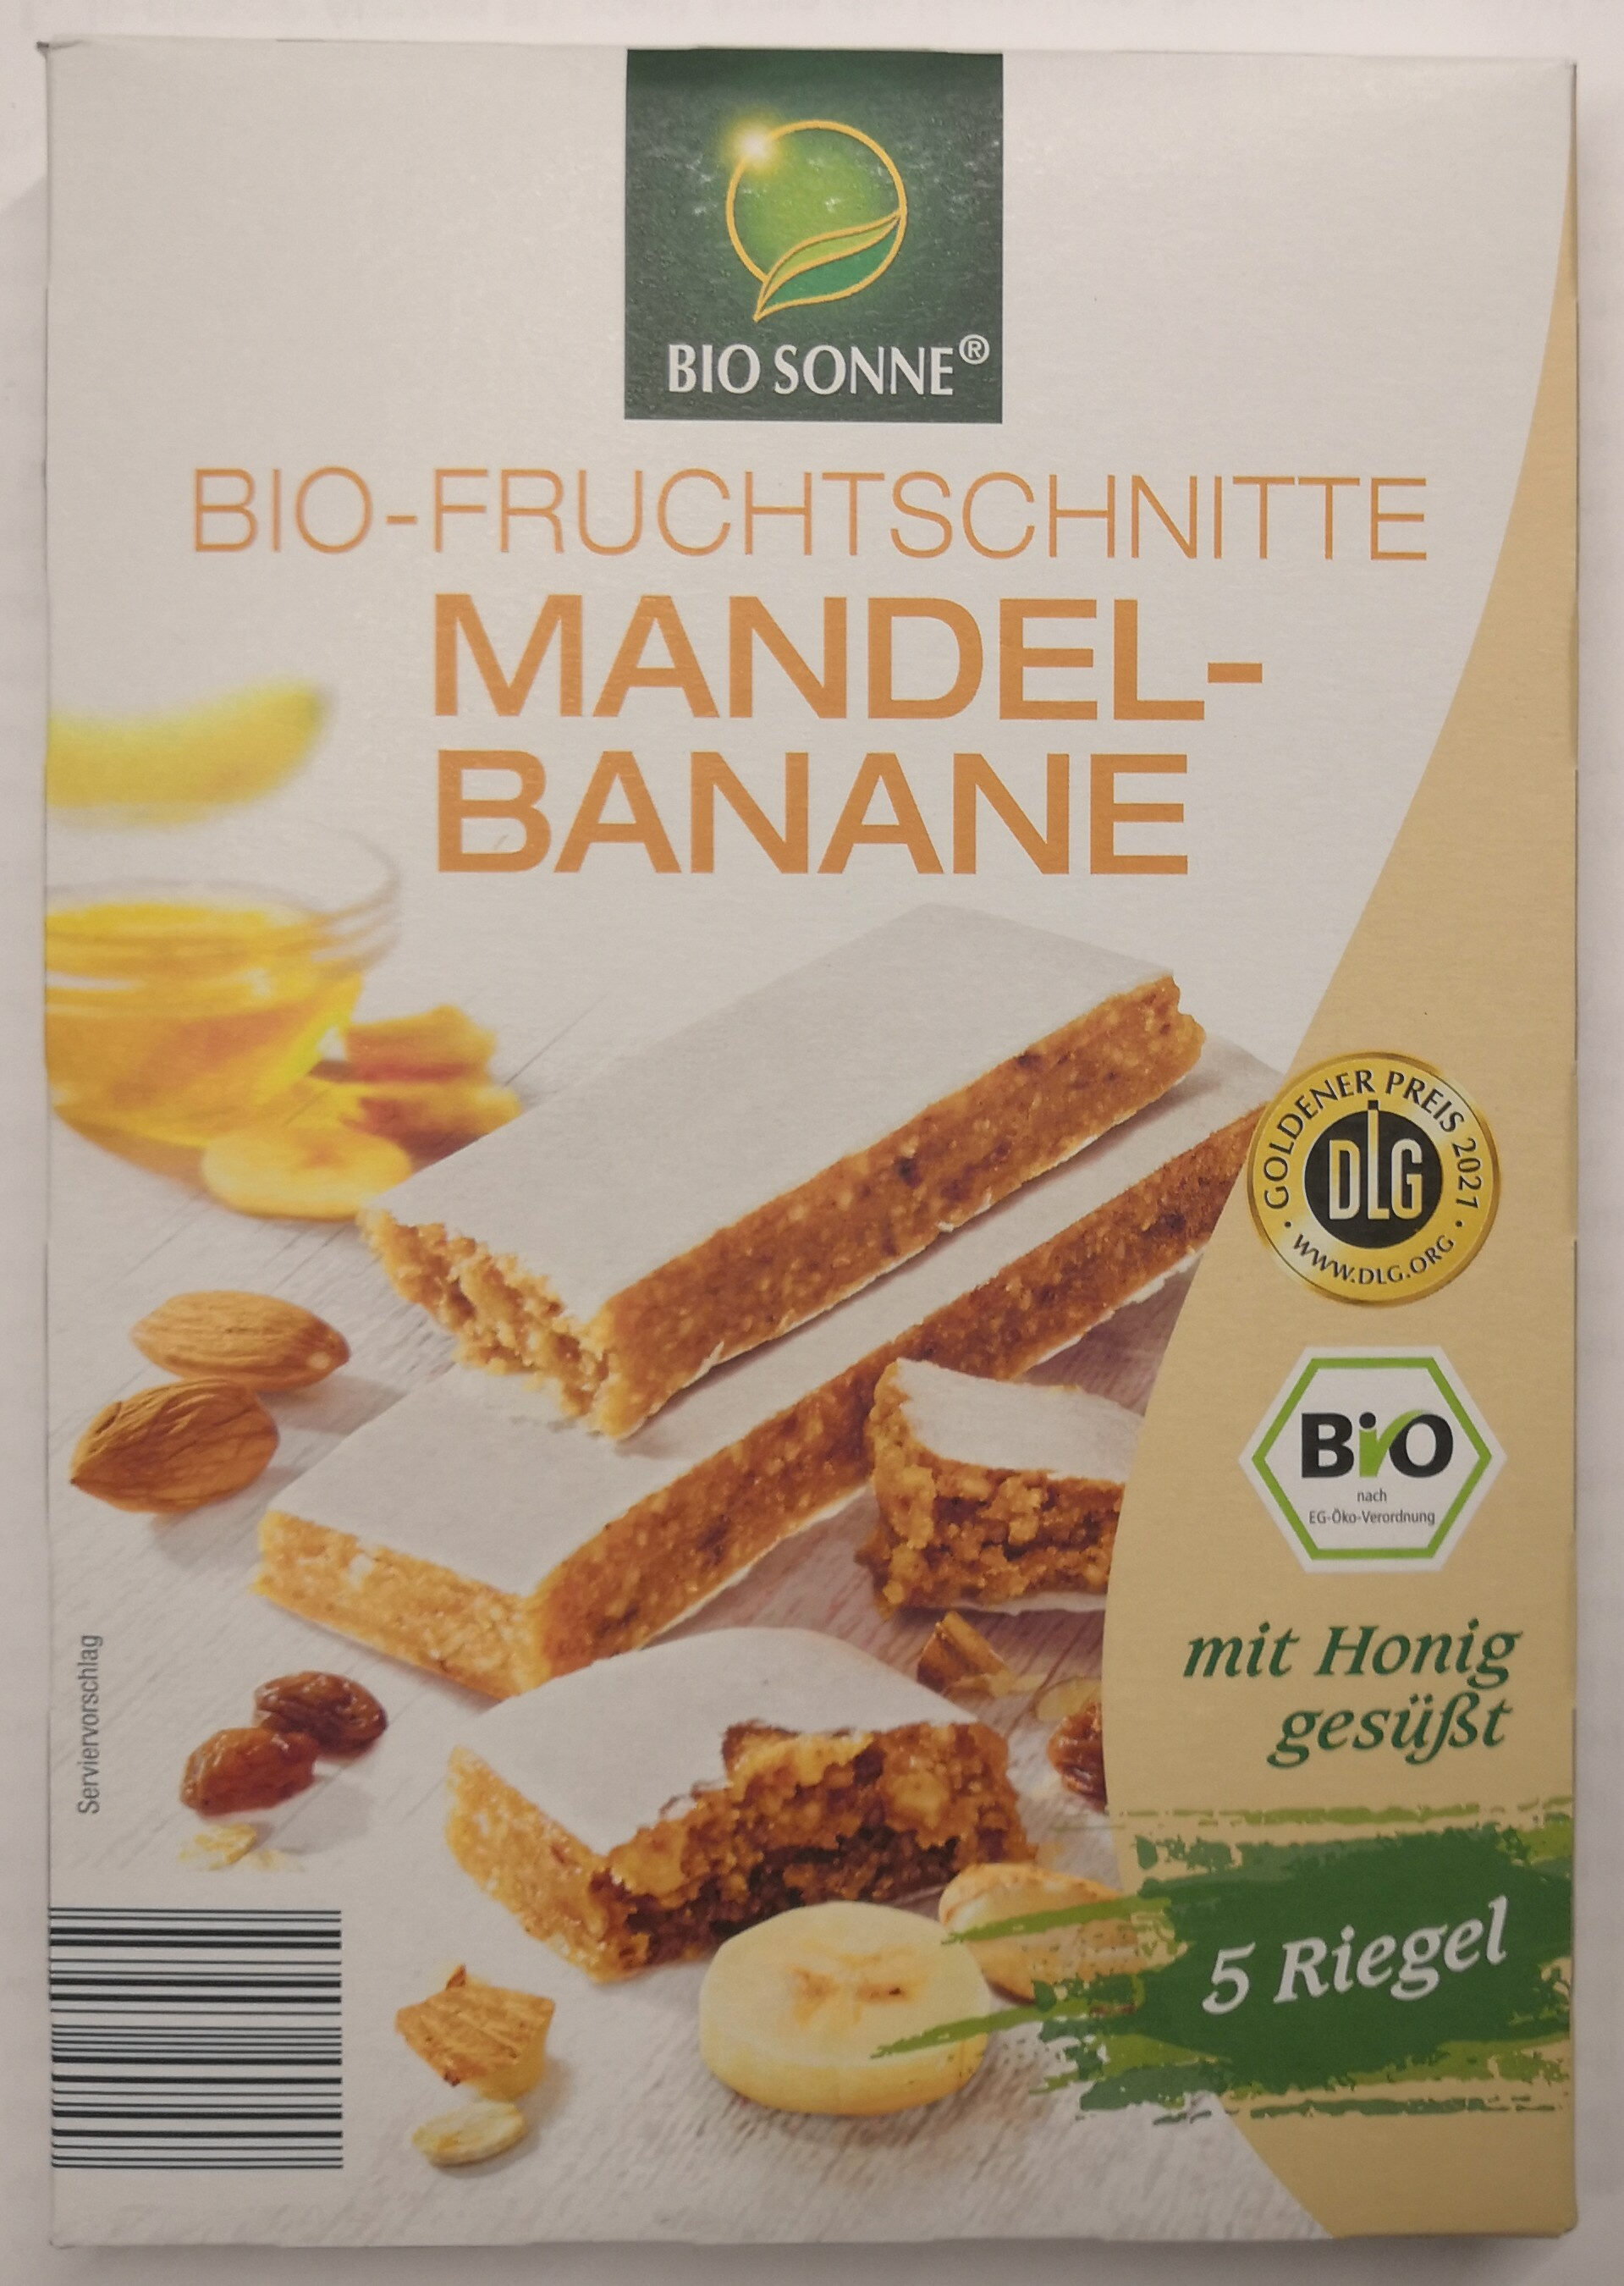 Bio-Fruchtschnitte Mandel-Banane - Product - de